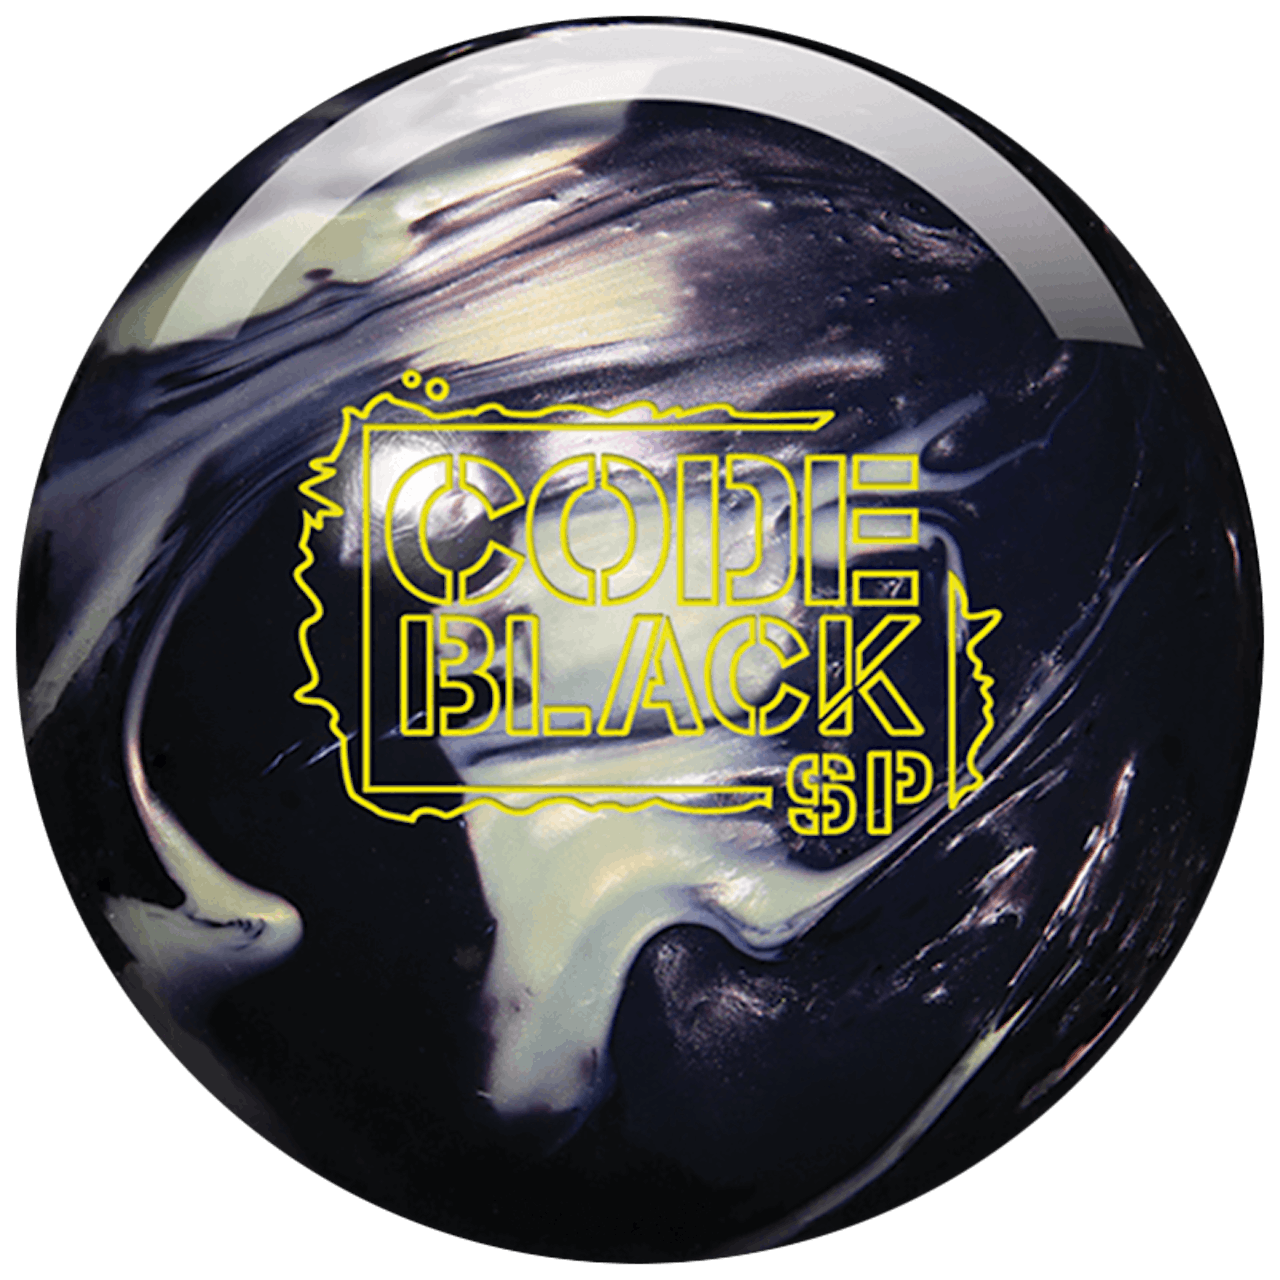 コード・ブラックSP | ストーム | 用品 | Rankseeker